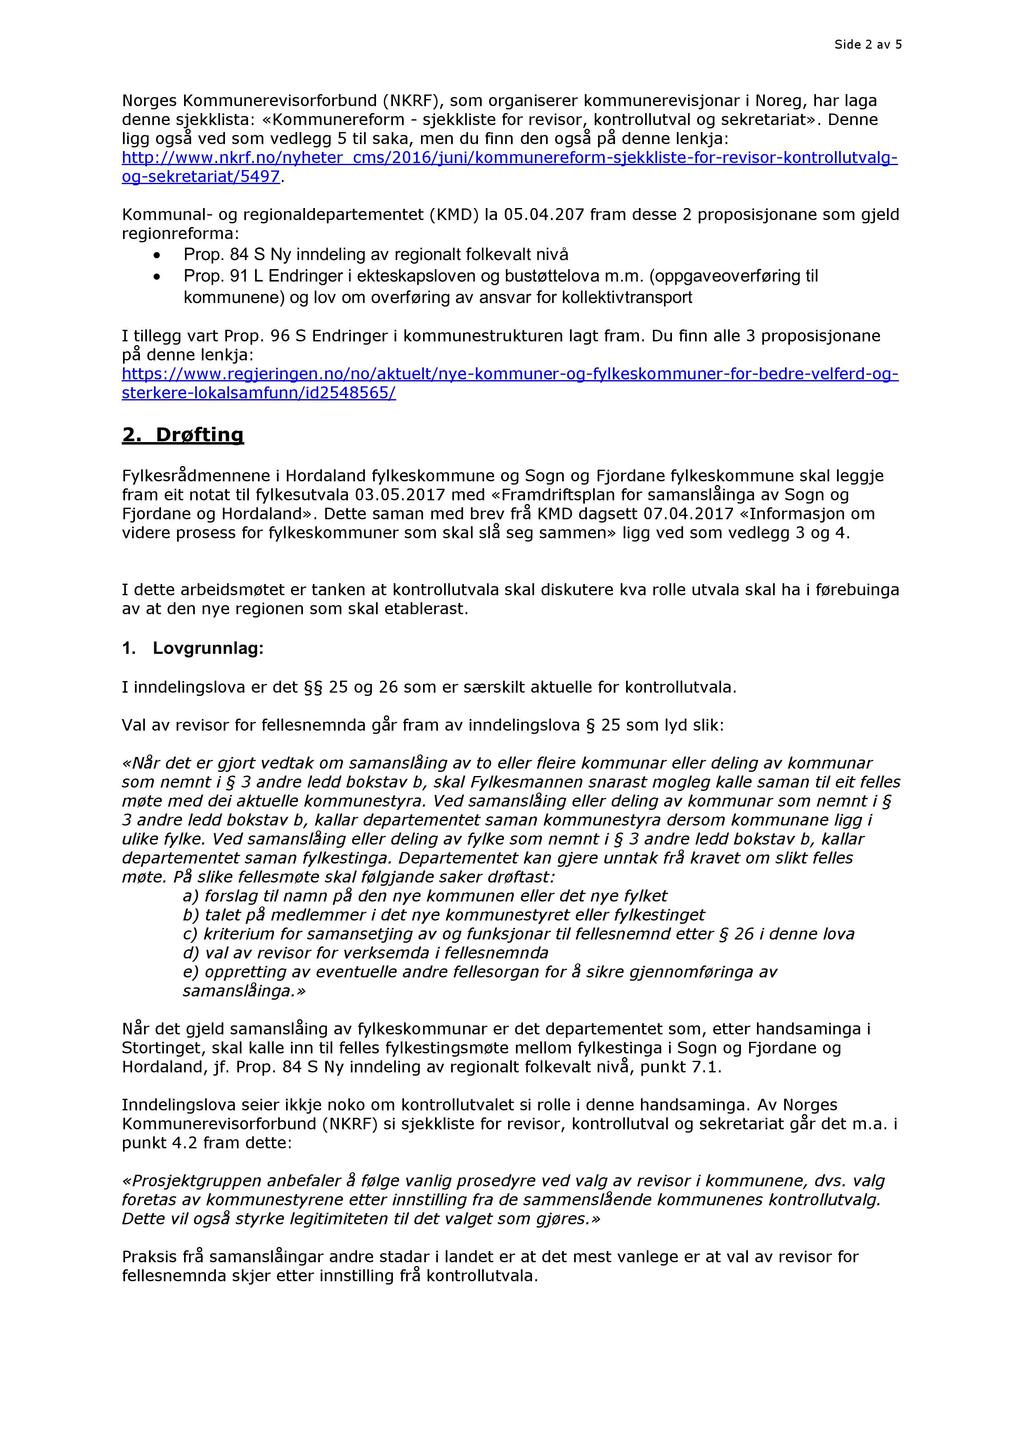 Side 2 av 5 Norges Kommunerevisorforbund (N KRF), som organiserer kommunerevisjonar i Noreg, har laga denne sjekklista: «Kommunereform - sjekkliste for revisor, kontrollutval og sekretariat».